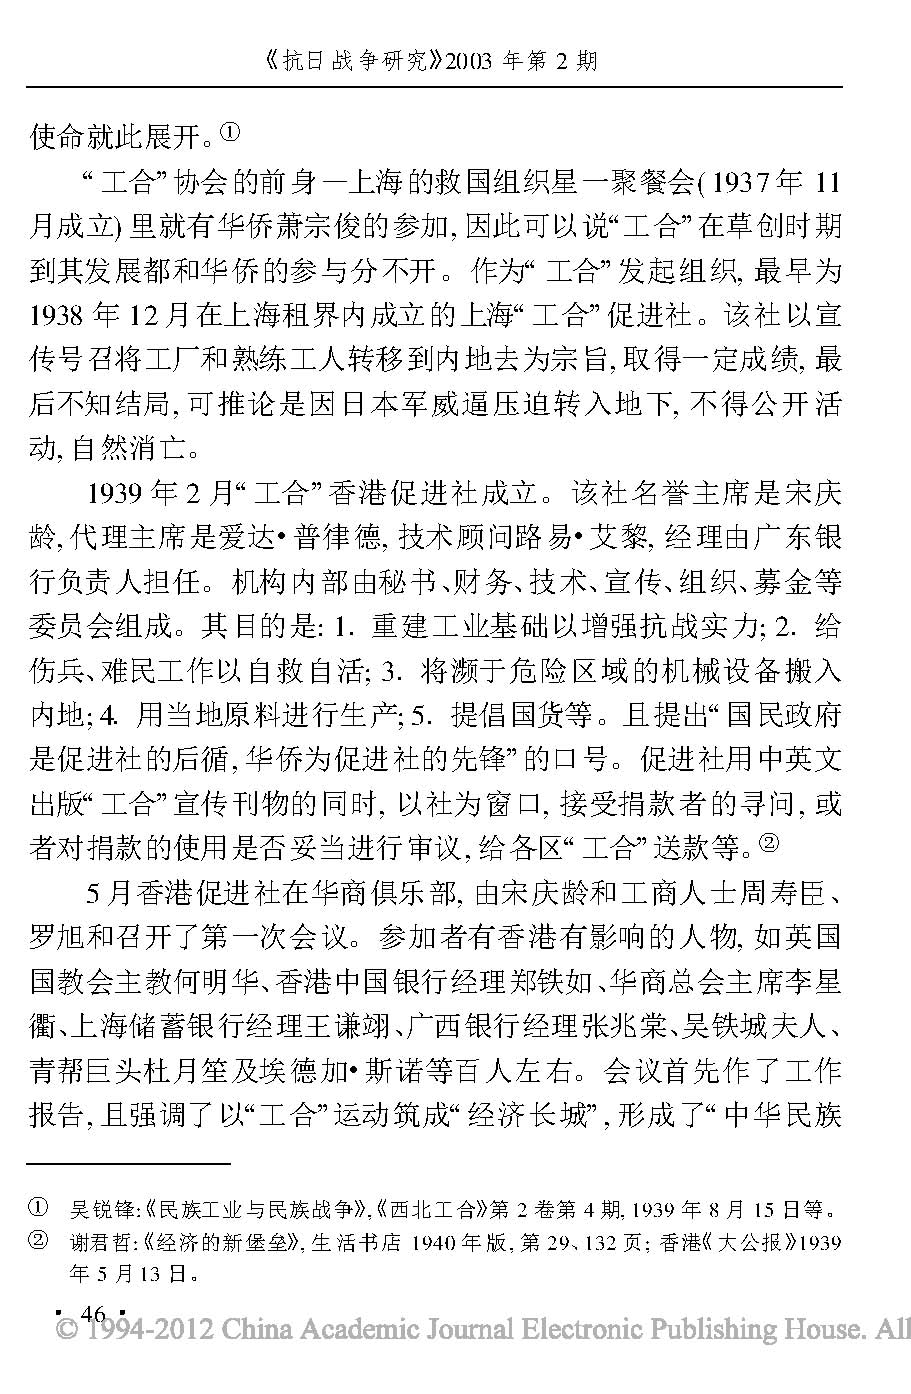 抗日战争时期的华侨和中国工业合作运动_页面_03.jpg